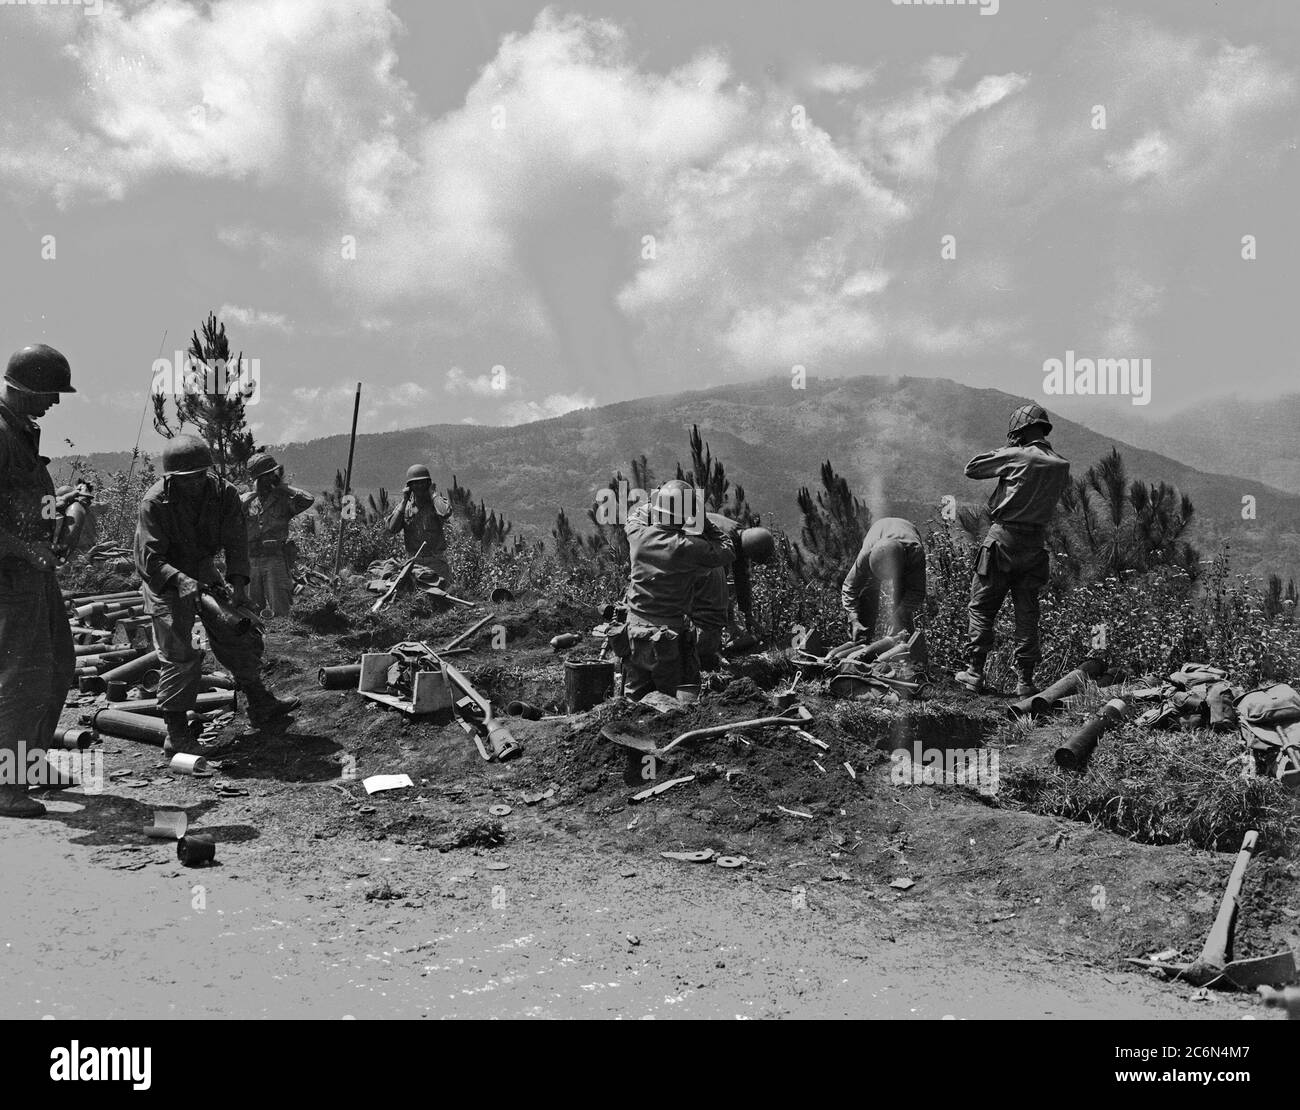 Des équipes de mortier de la 37e Division d'infanterie ont tiré sur des positions ennemies sur la route de Baguio, Luzon, Philippines, le 22 avril 1945 Banque D'Images